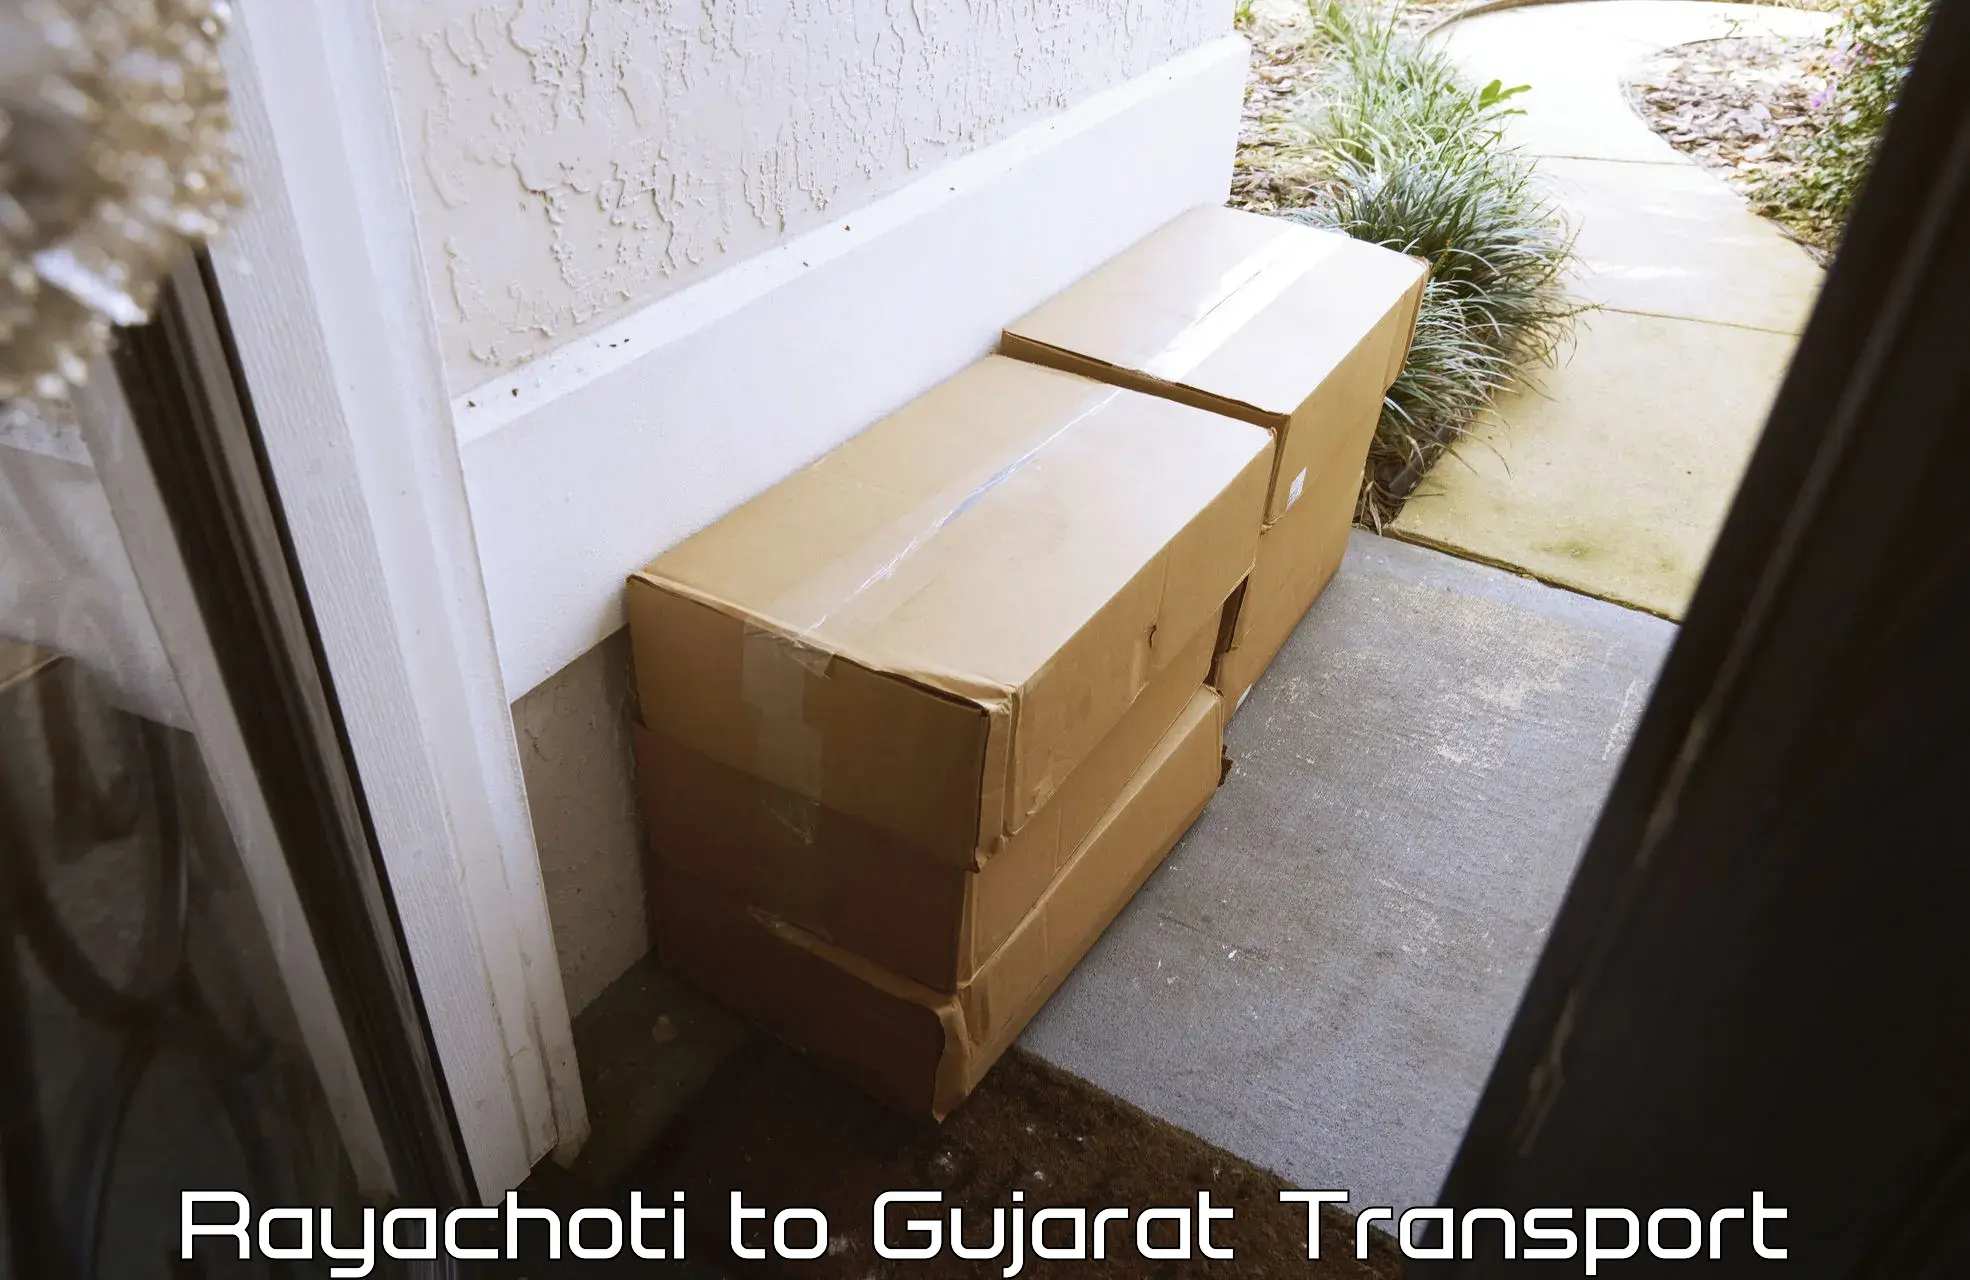 Furniture transport service Rayachoti to Vadodara